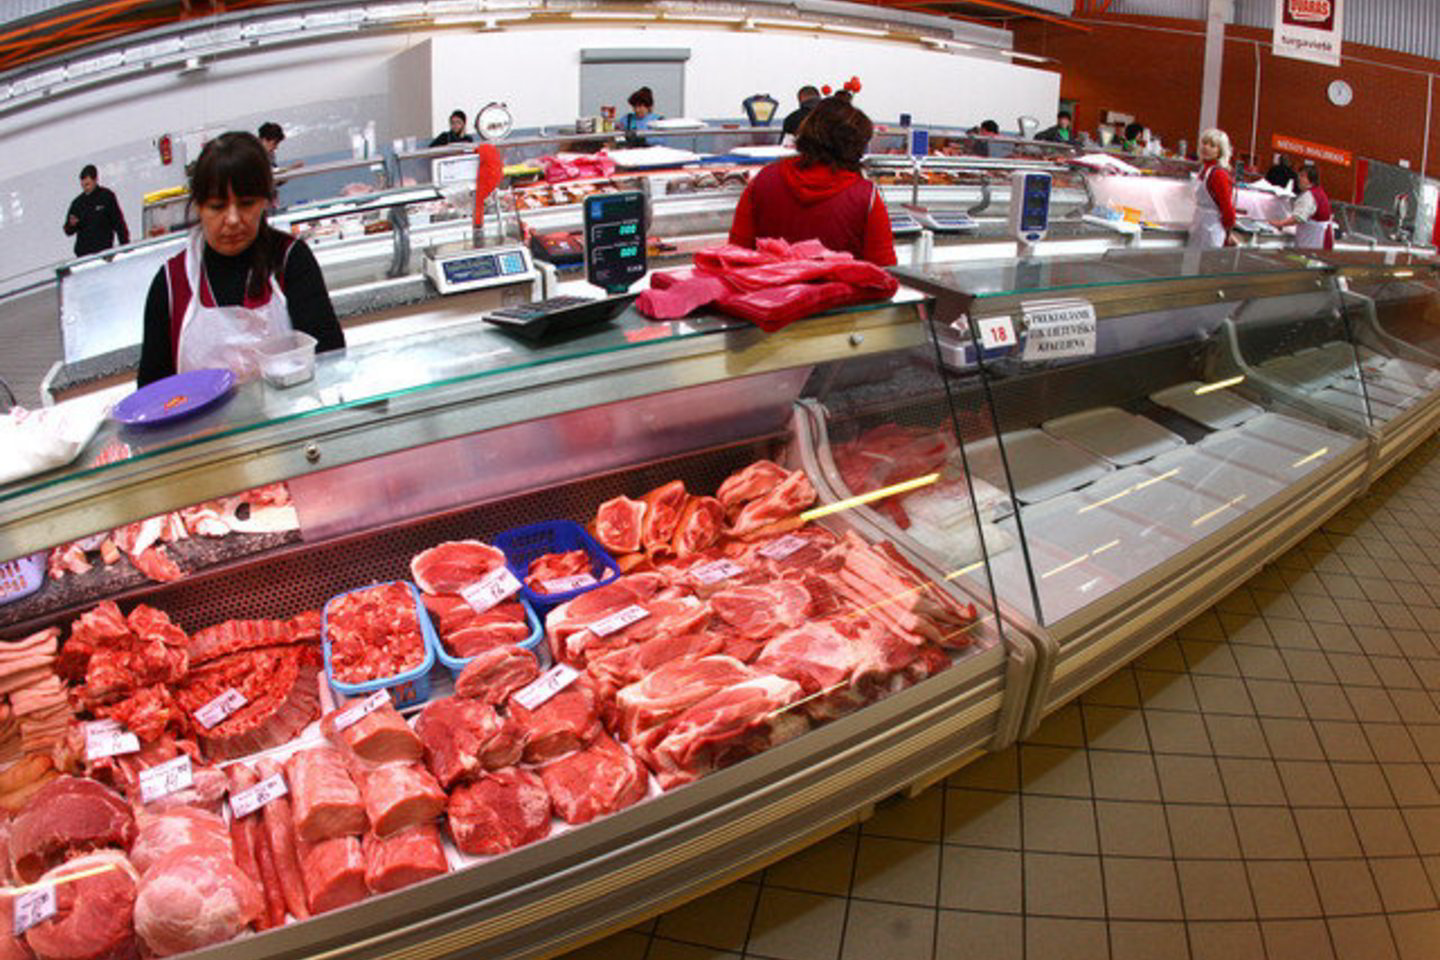 Mėsos kainos šoktels į viršų<br>G. Šiuparys